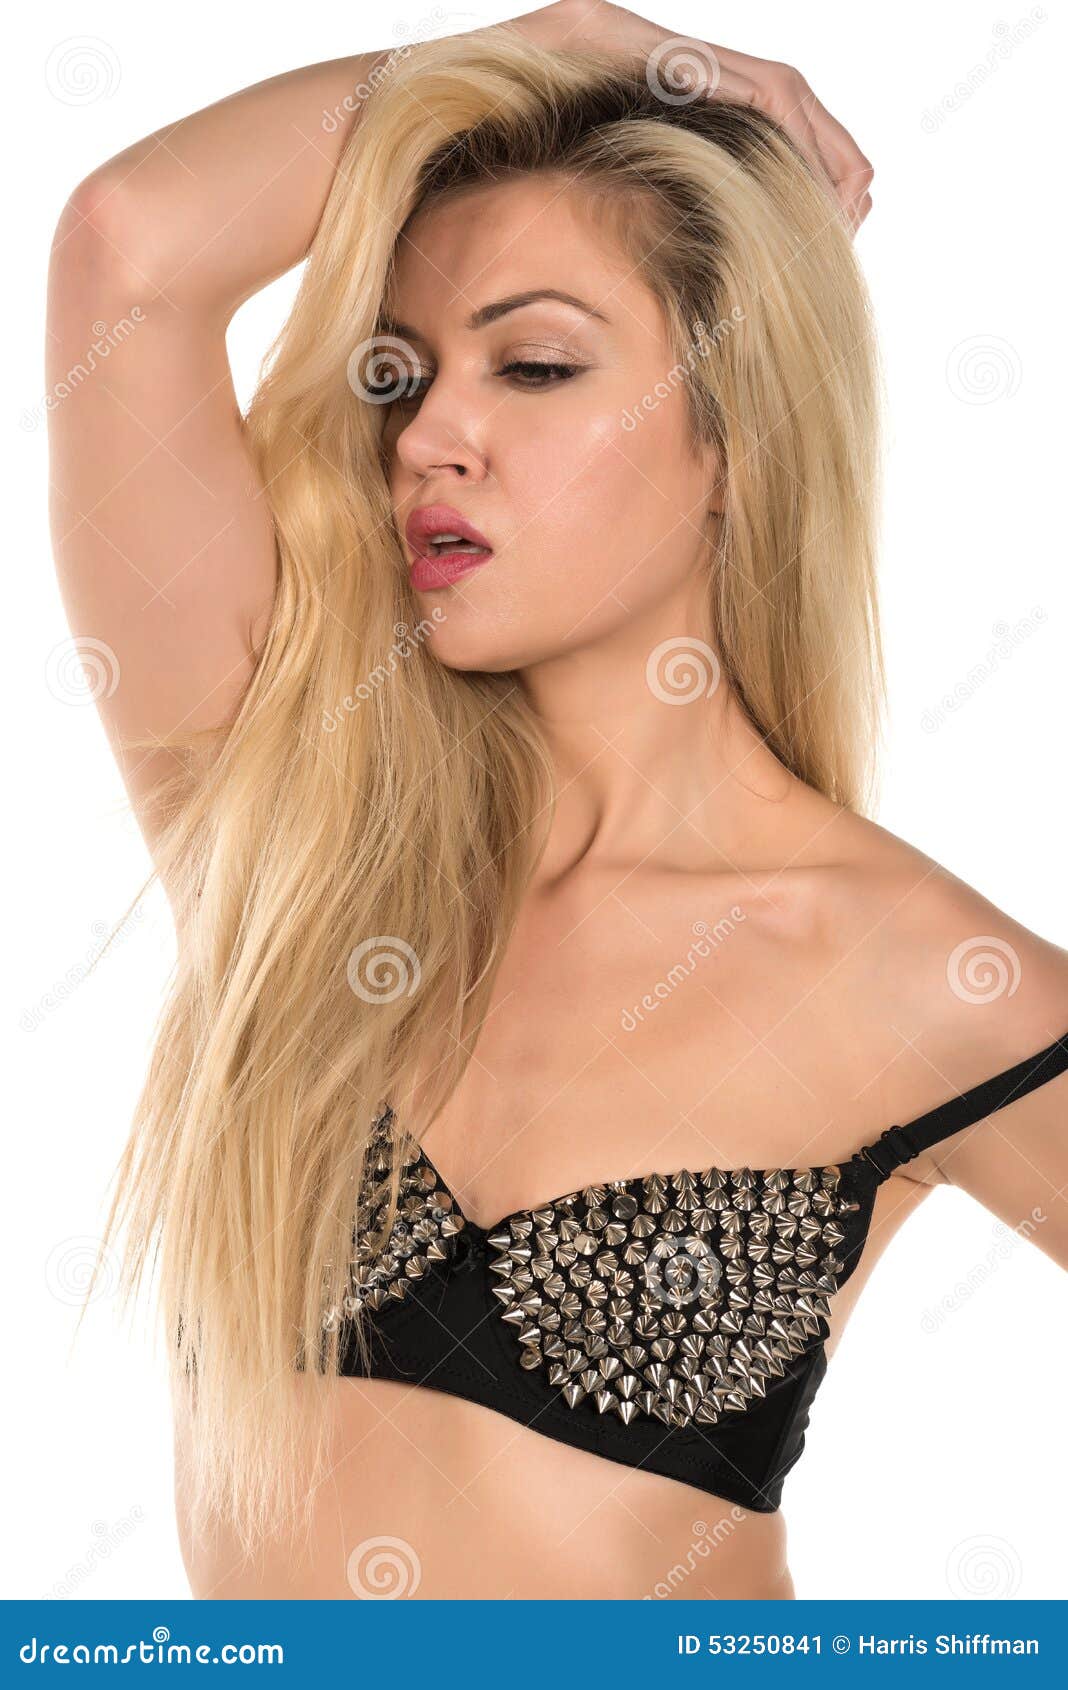 https://thumbs.dreamstime.com/z/blonde-beautiful-tall-russian-black-bra-53250841.jpg